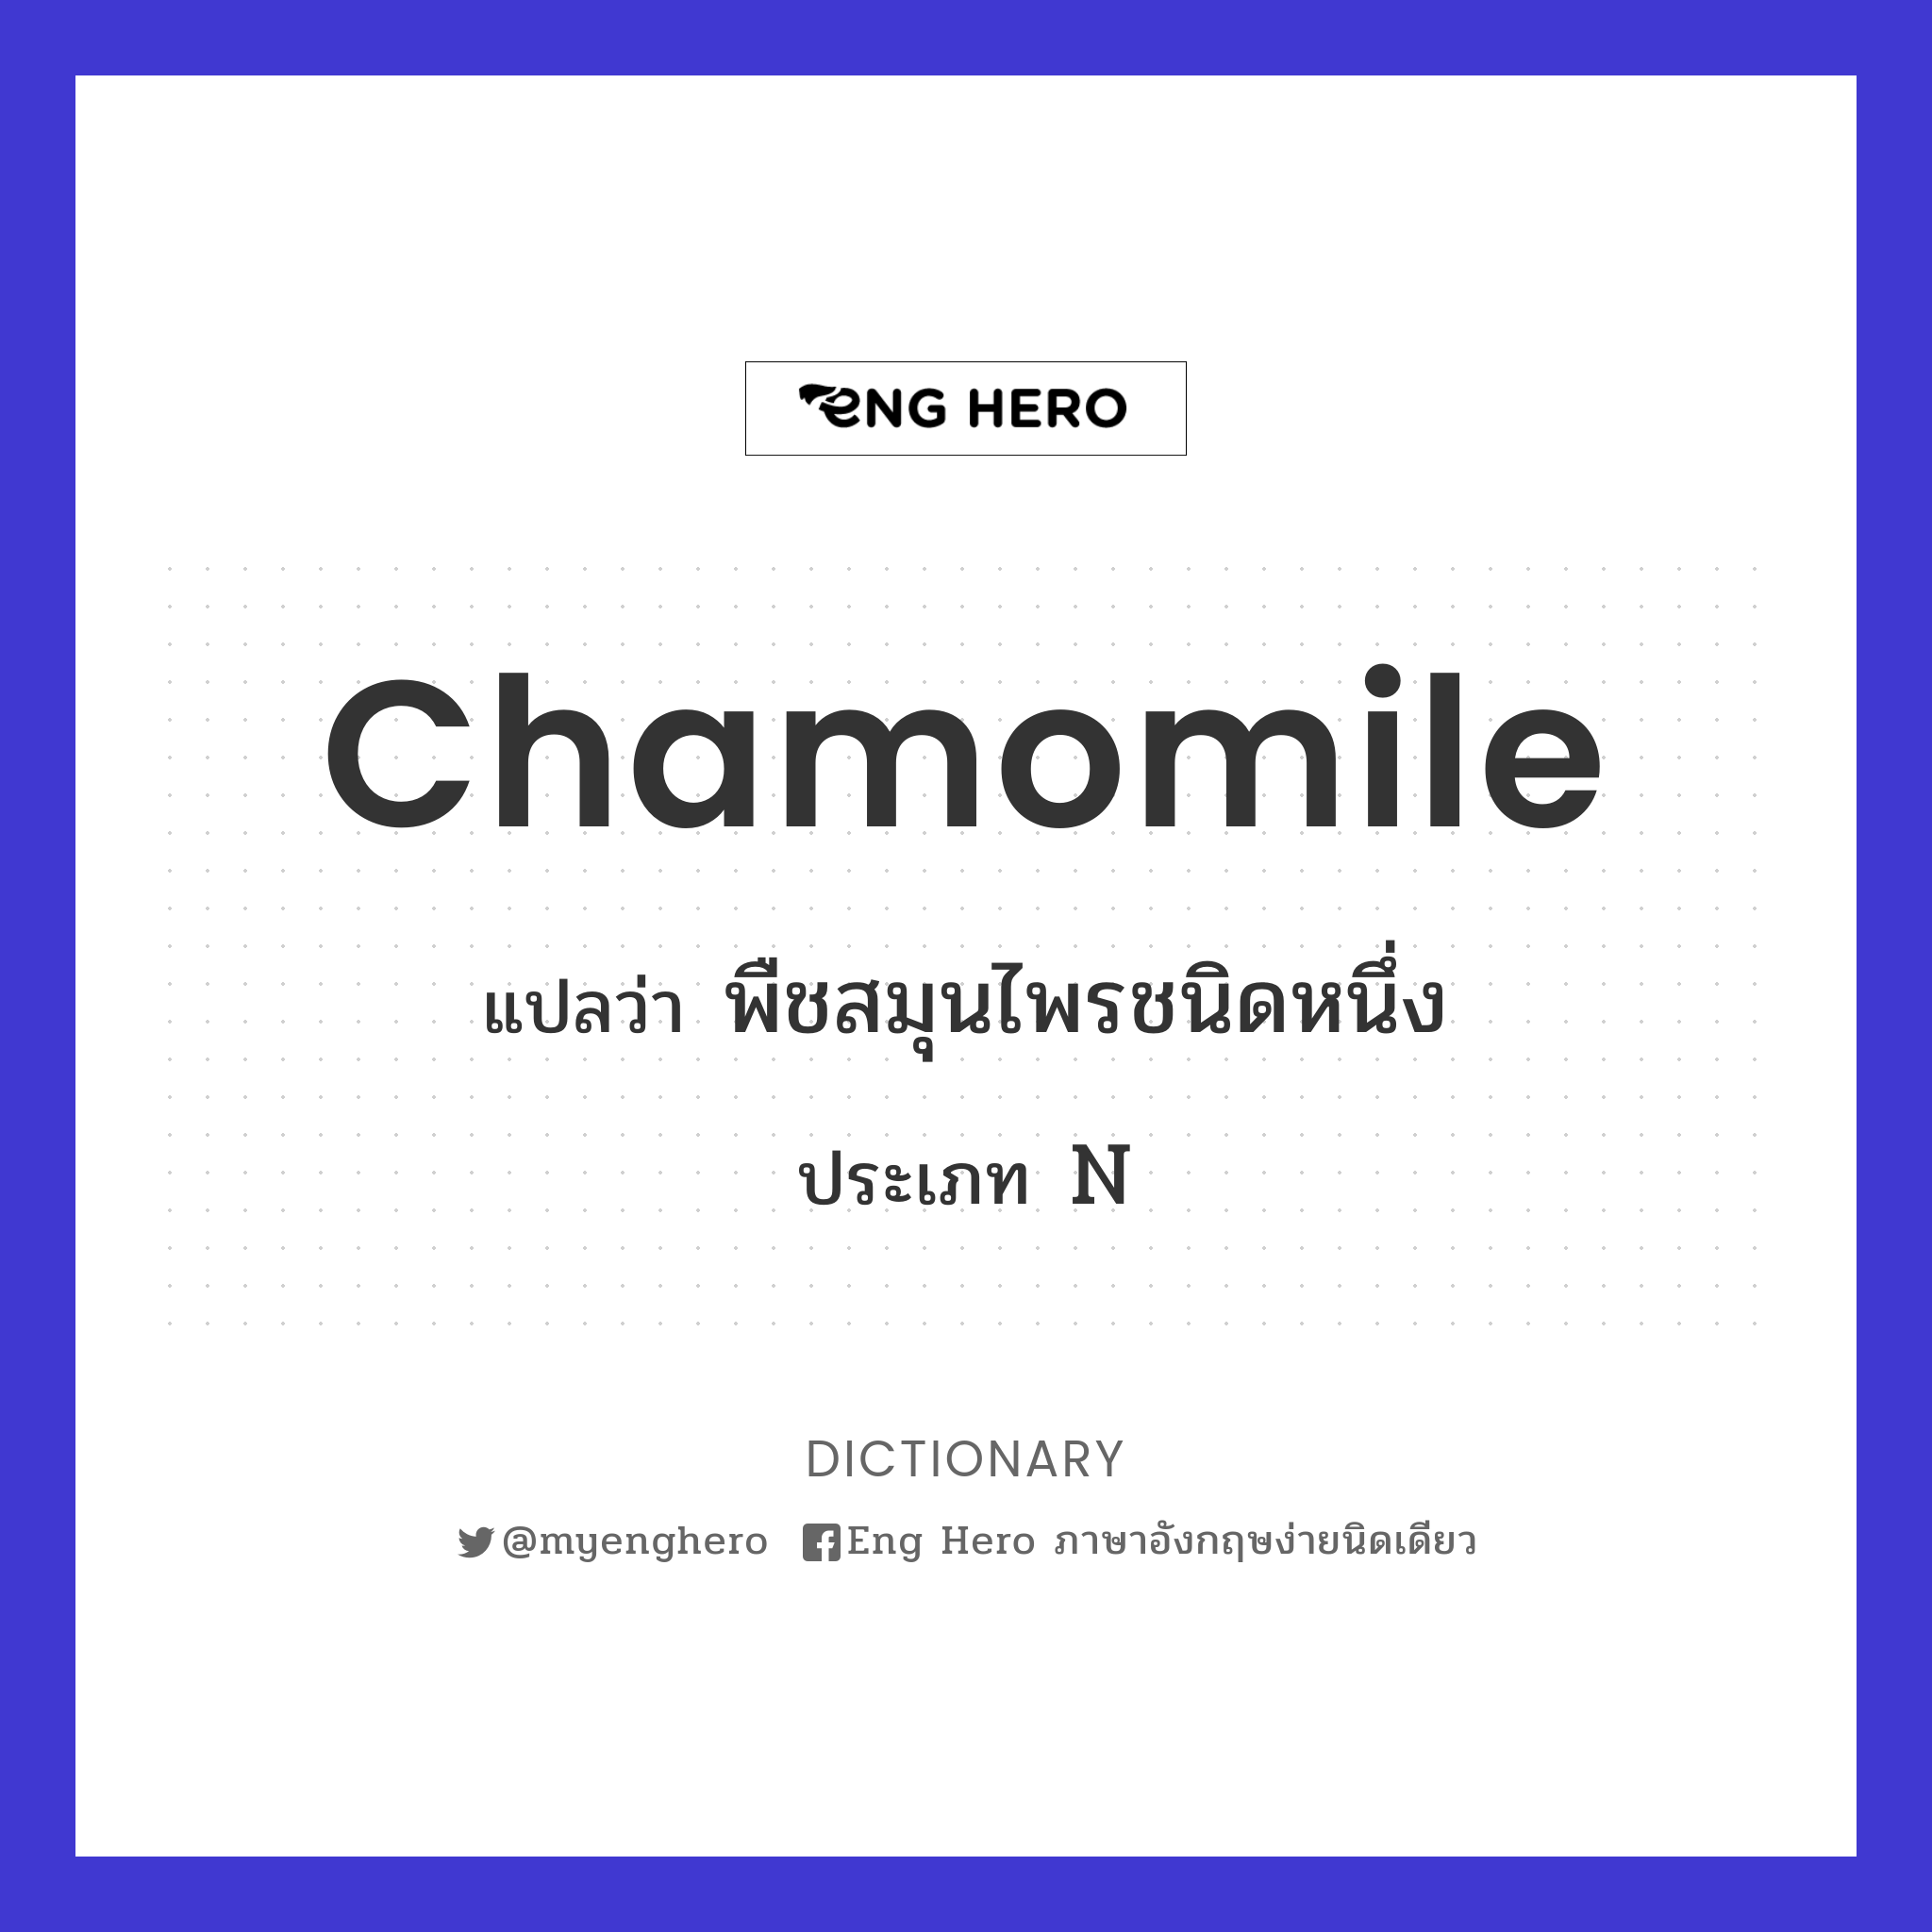 chamomile